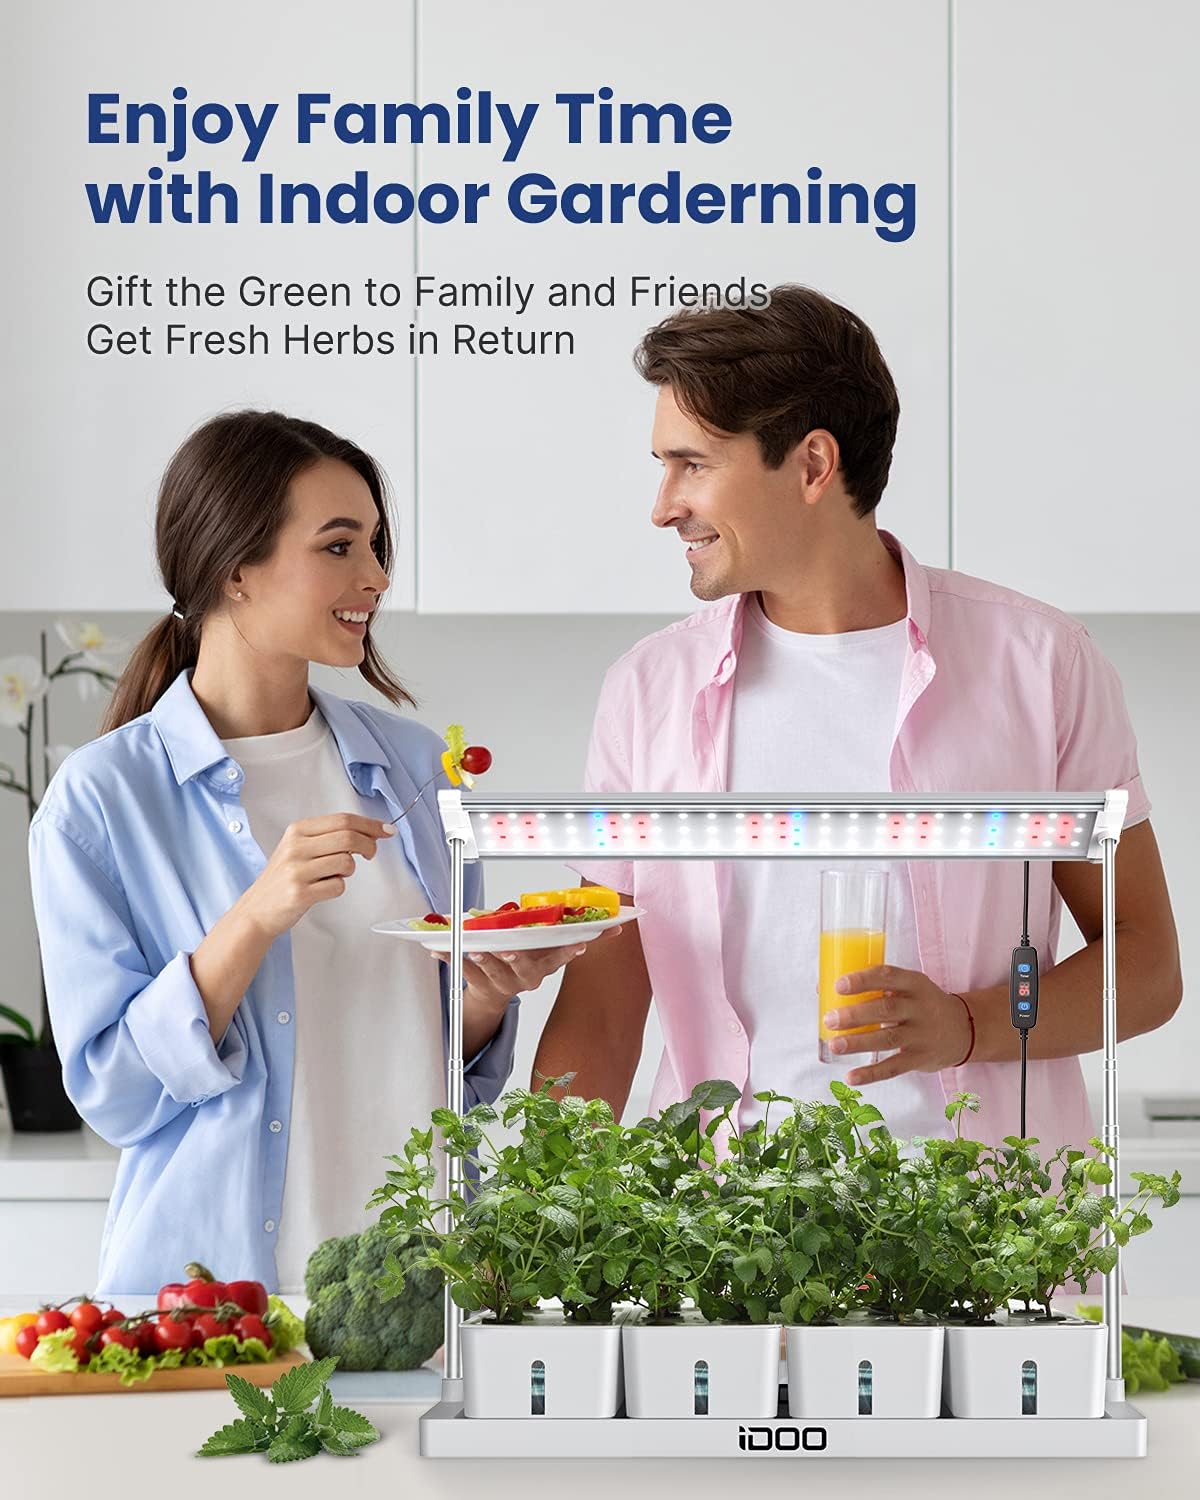 iDOO 20 Pods Indoor Herb Garden Kit - Hydroponic Growing System Hydroponic Growing Systems new by idoo